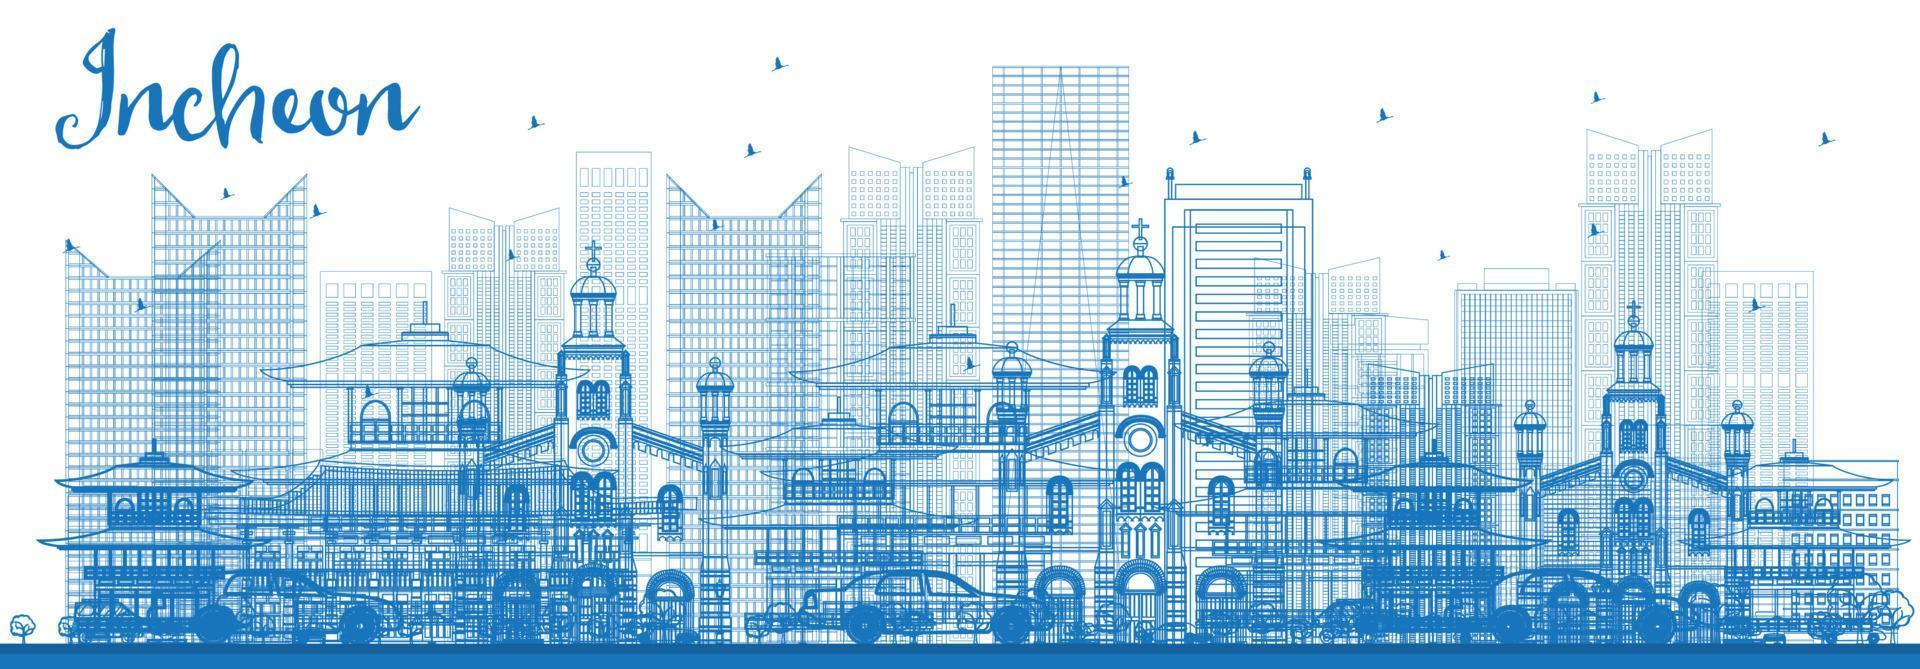 schets incheon skyline met blauwe gebouwen. vector